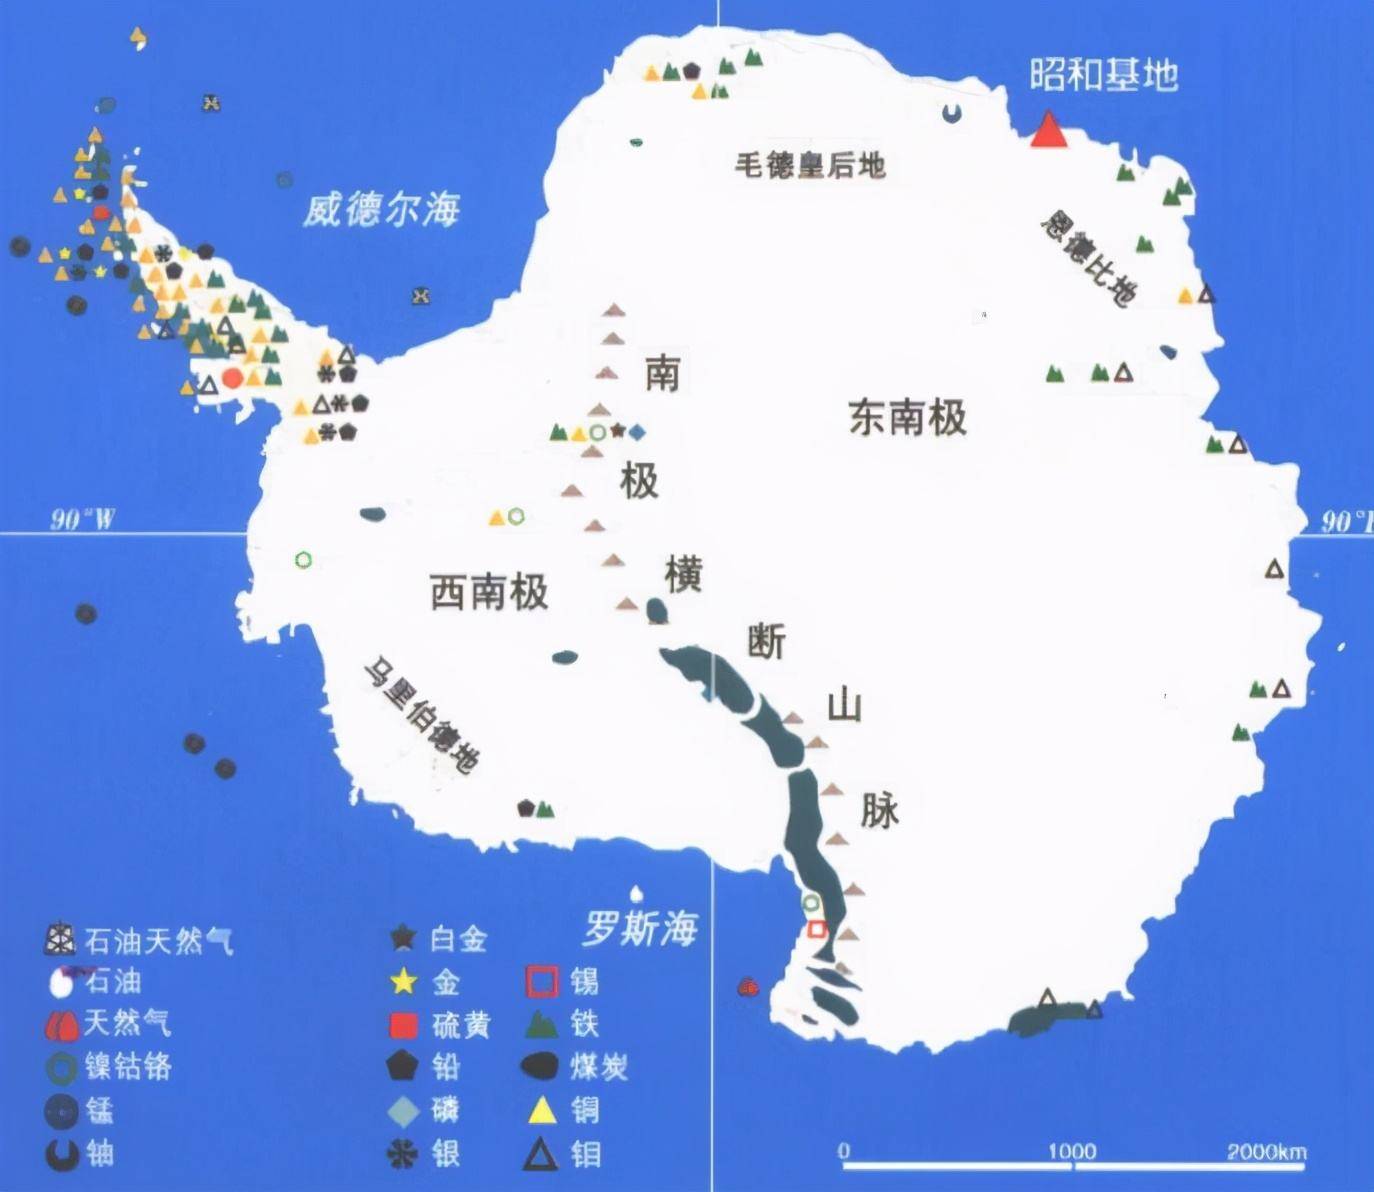 南极半岛地理位置图图片